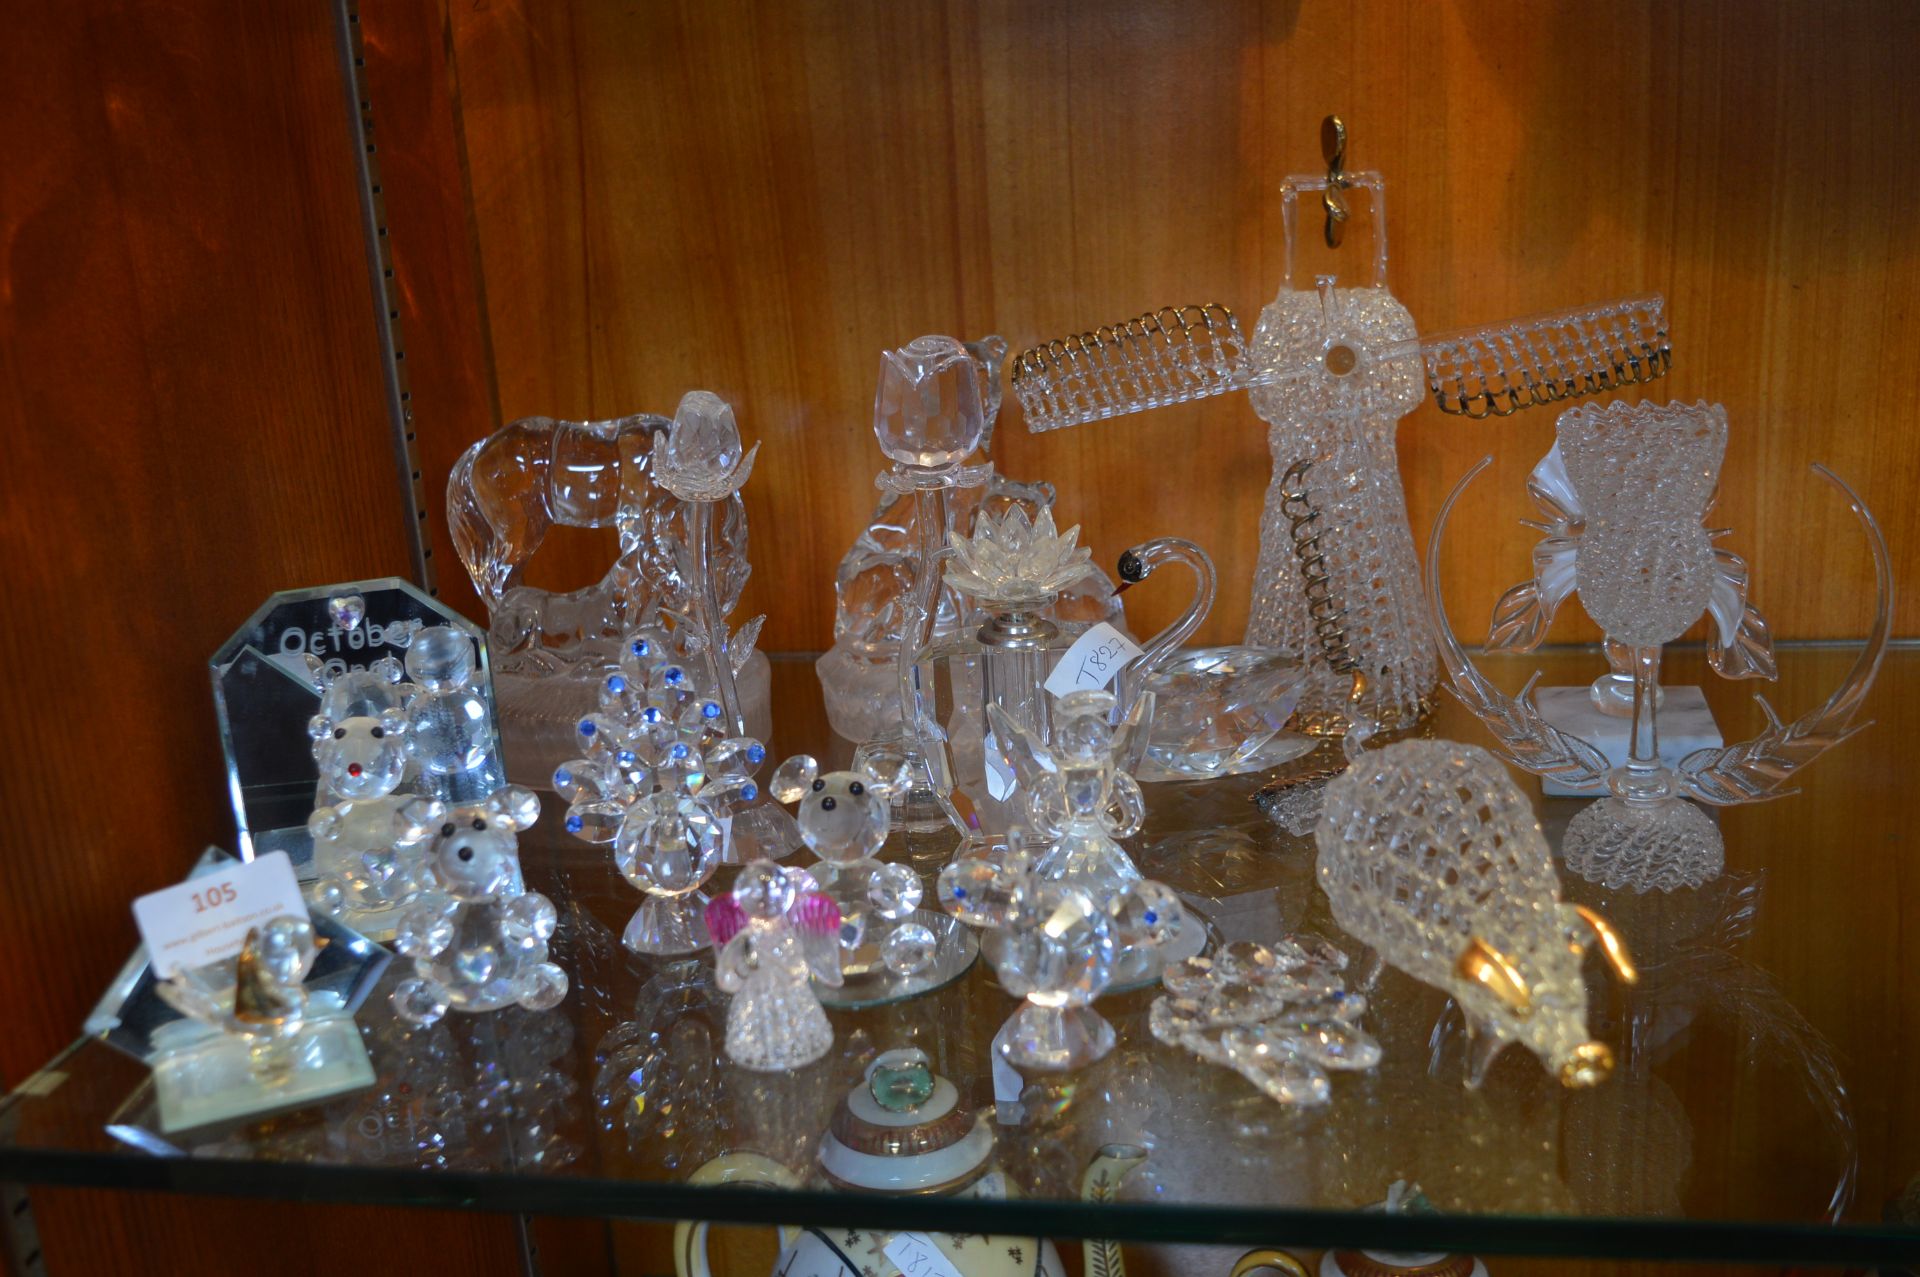 Crystal Glass Animals, Windmills, Ornaments, etc.